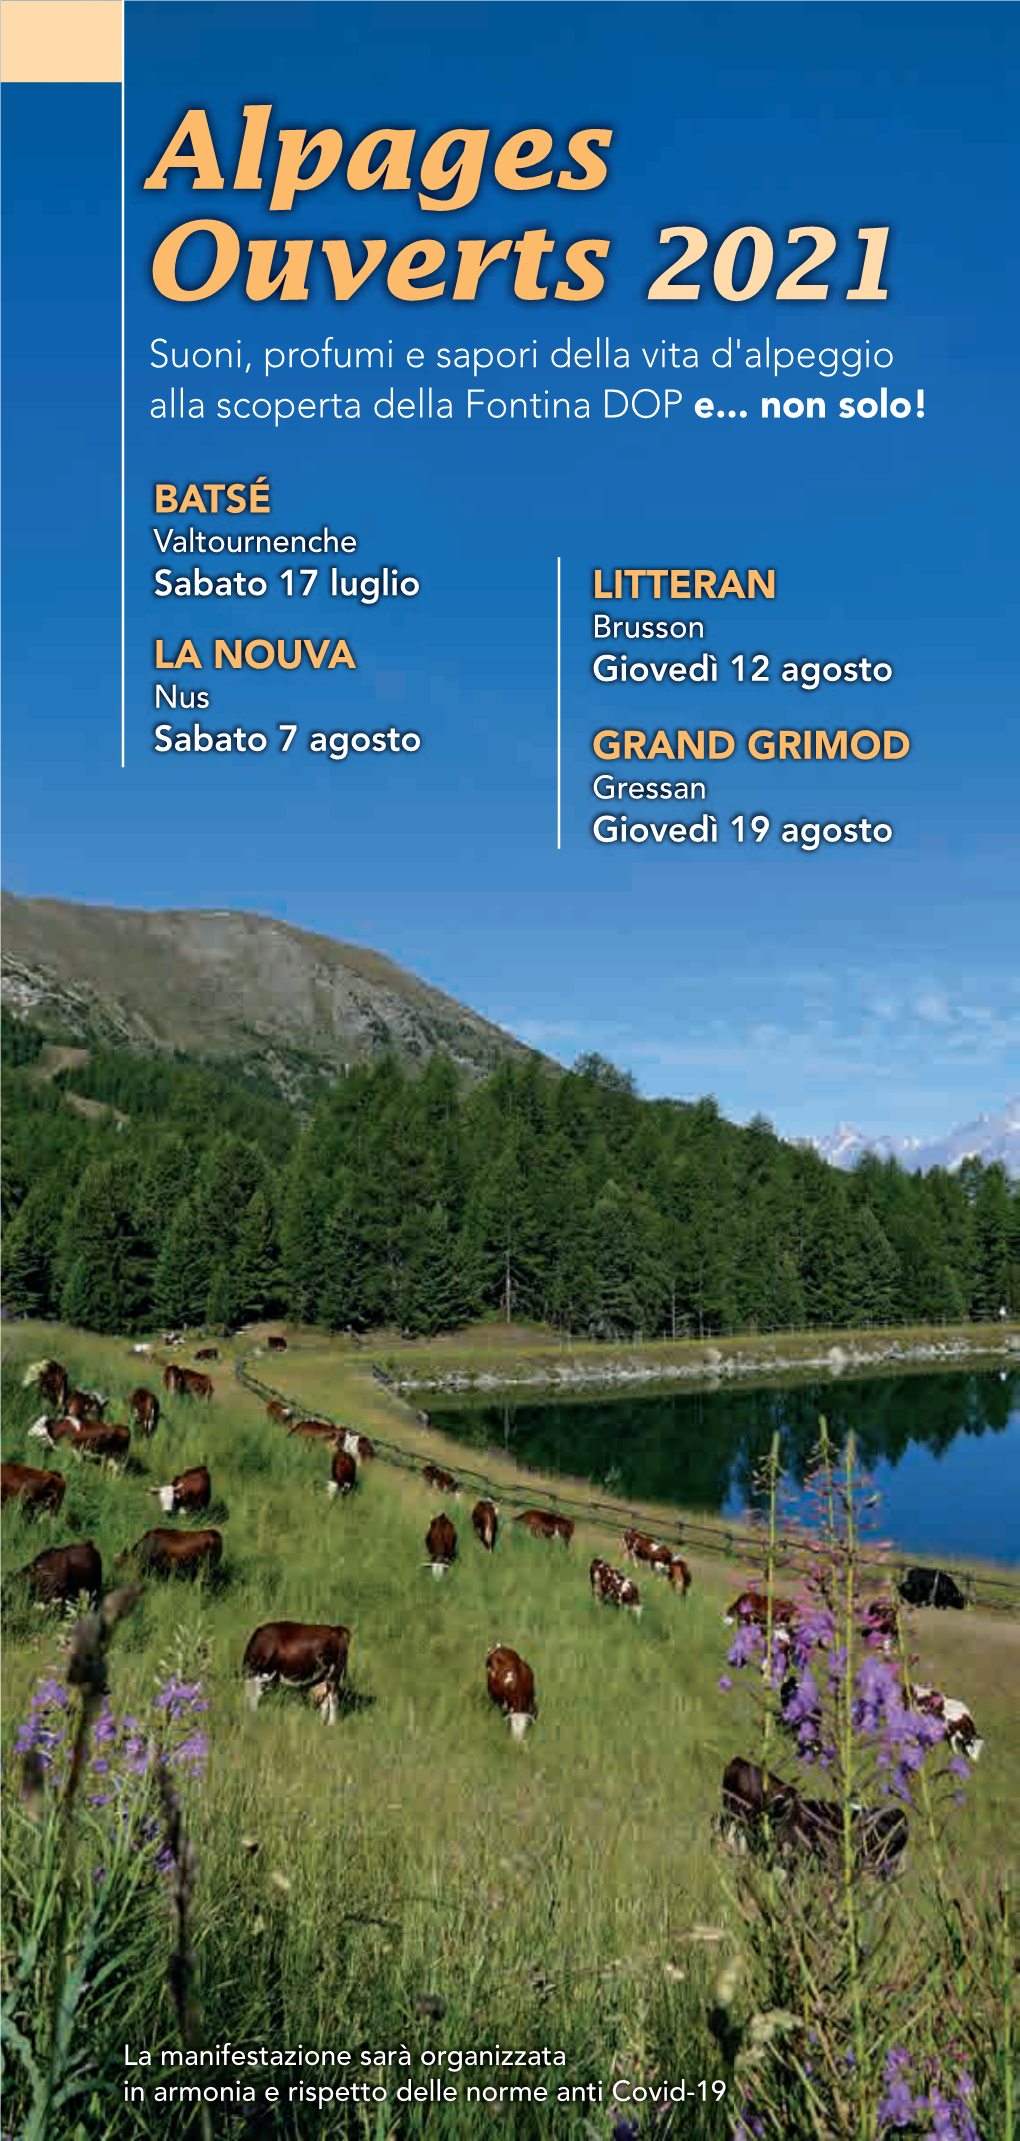 Alpages Ouverts 2021 Suoni, Profumi E Sapori Della Vita D'alpeggio Alla Scoperta Della Fontina DOP E